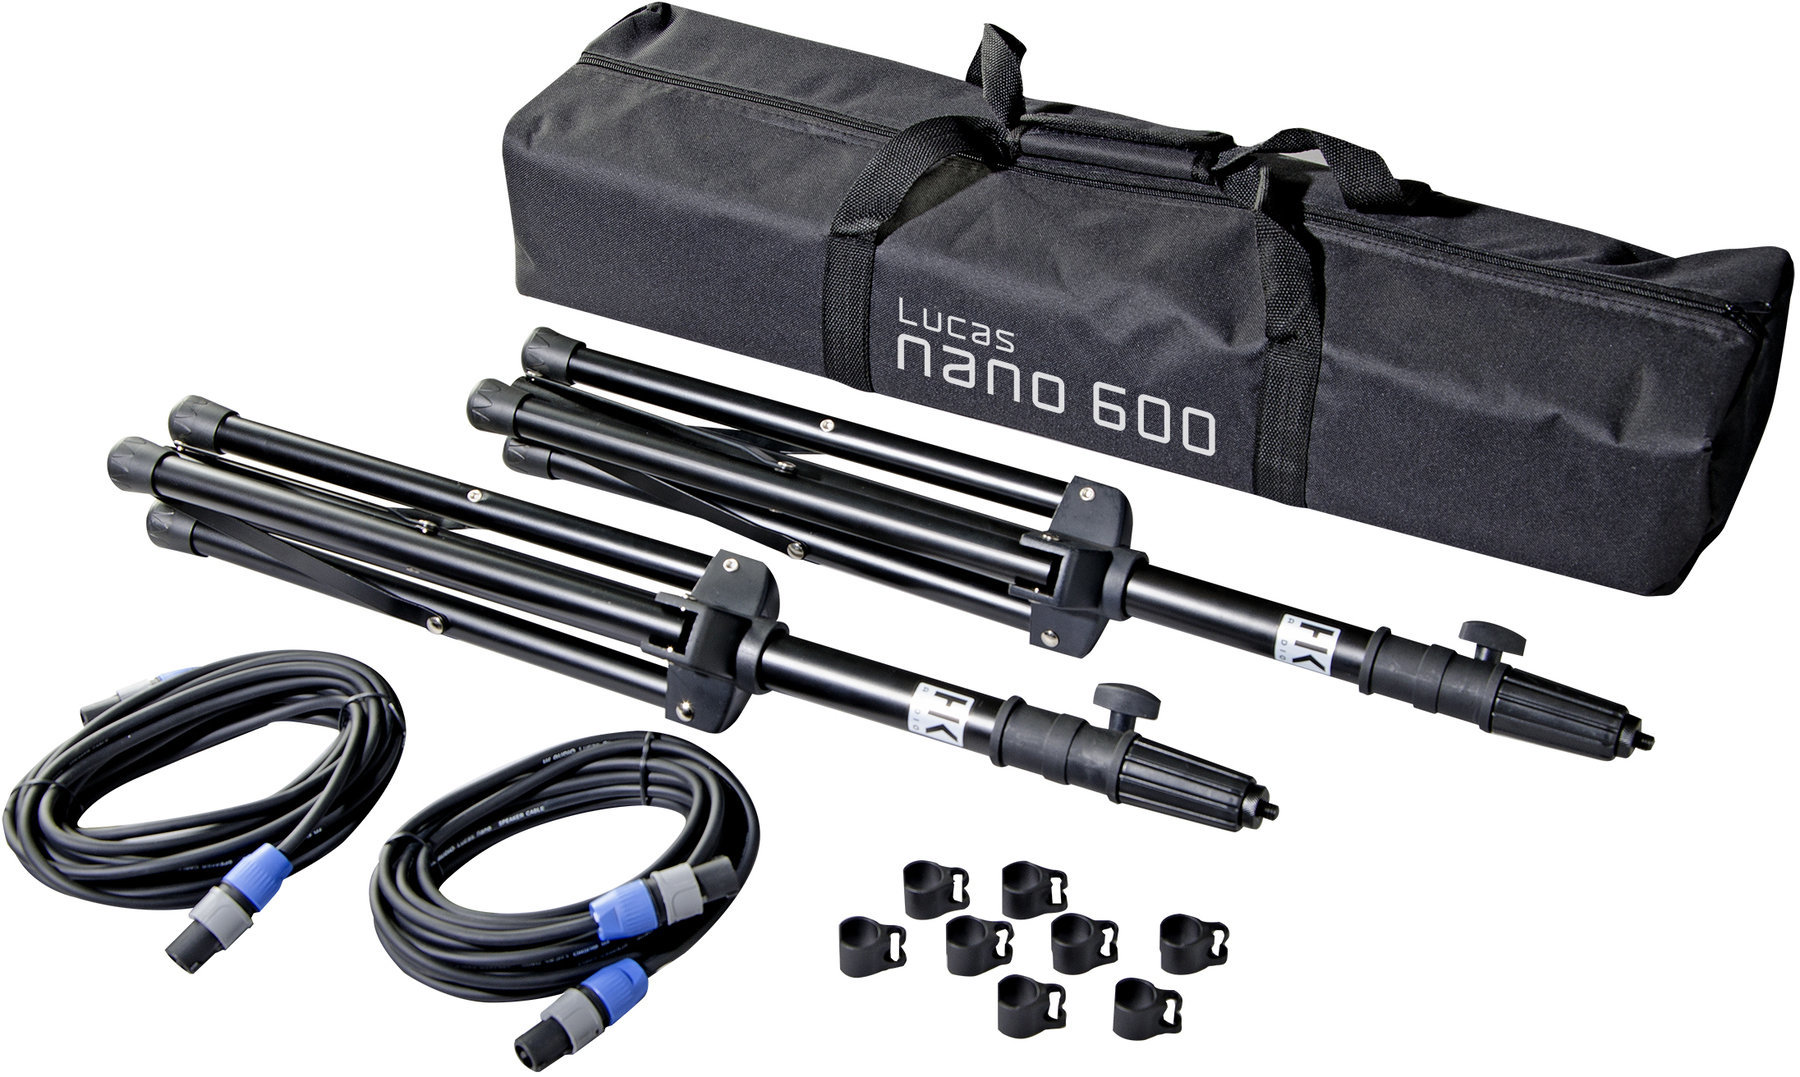 Teleskopisk højtalerstang HK Audio L.U.C.A.S. NANO 600 Stereo Stand Add On